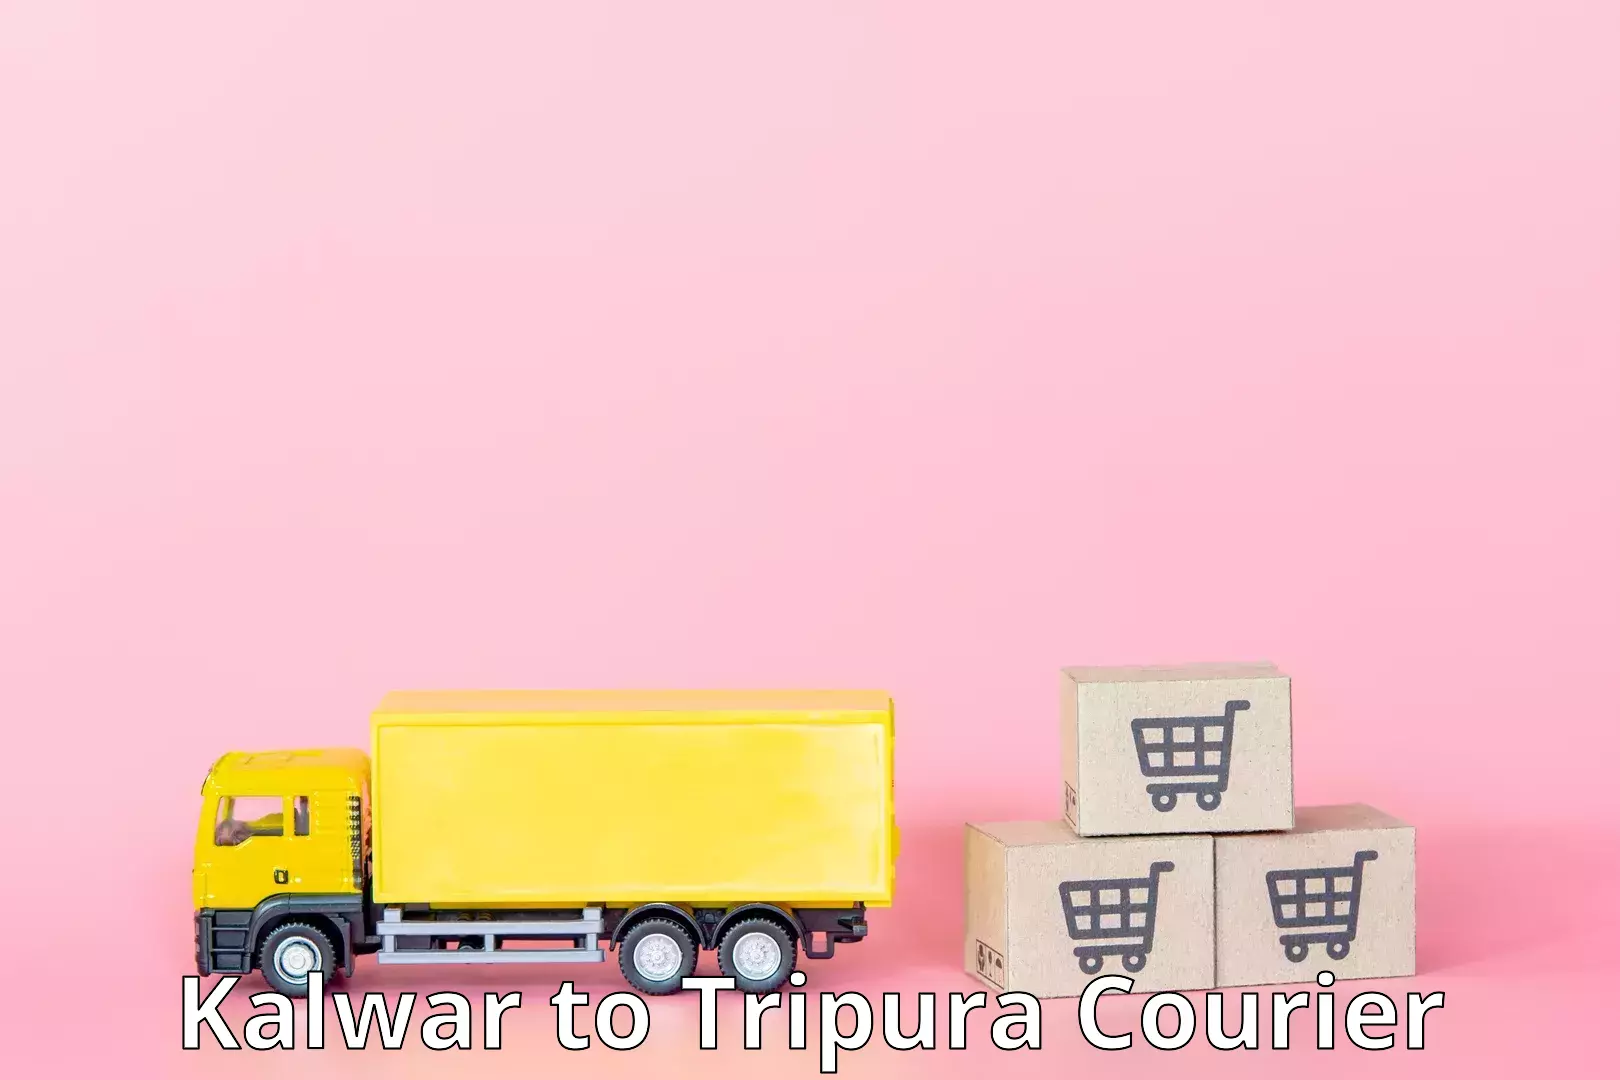 Courier service innovation Kalwar to Manughat